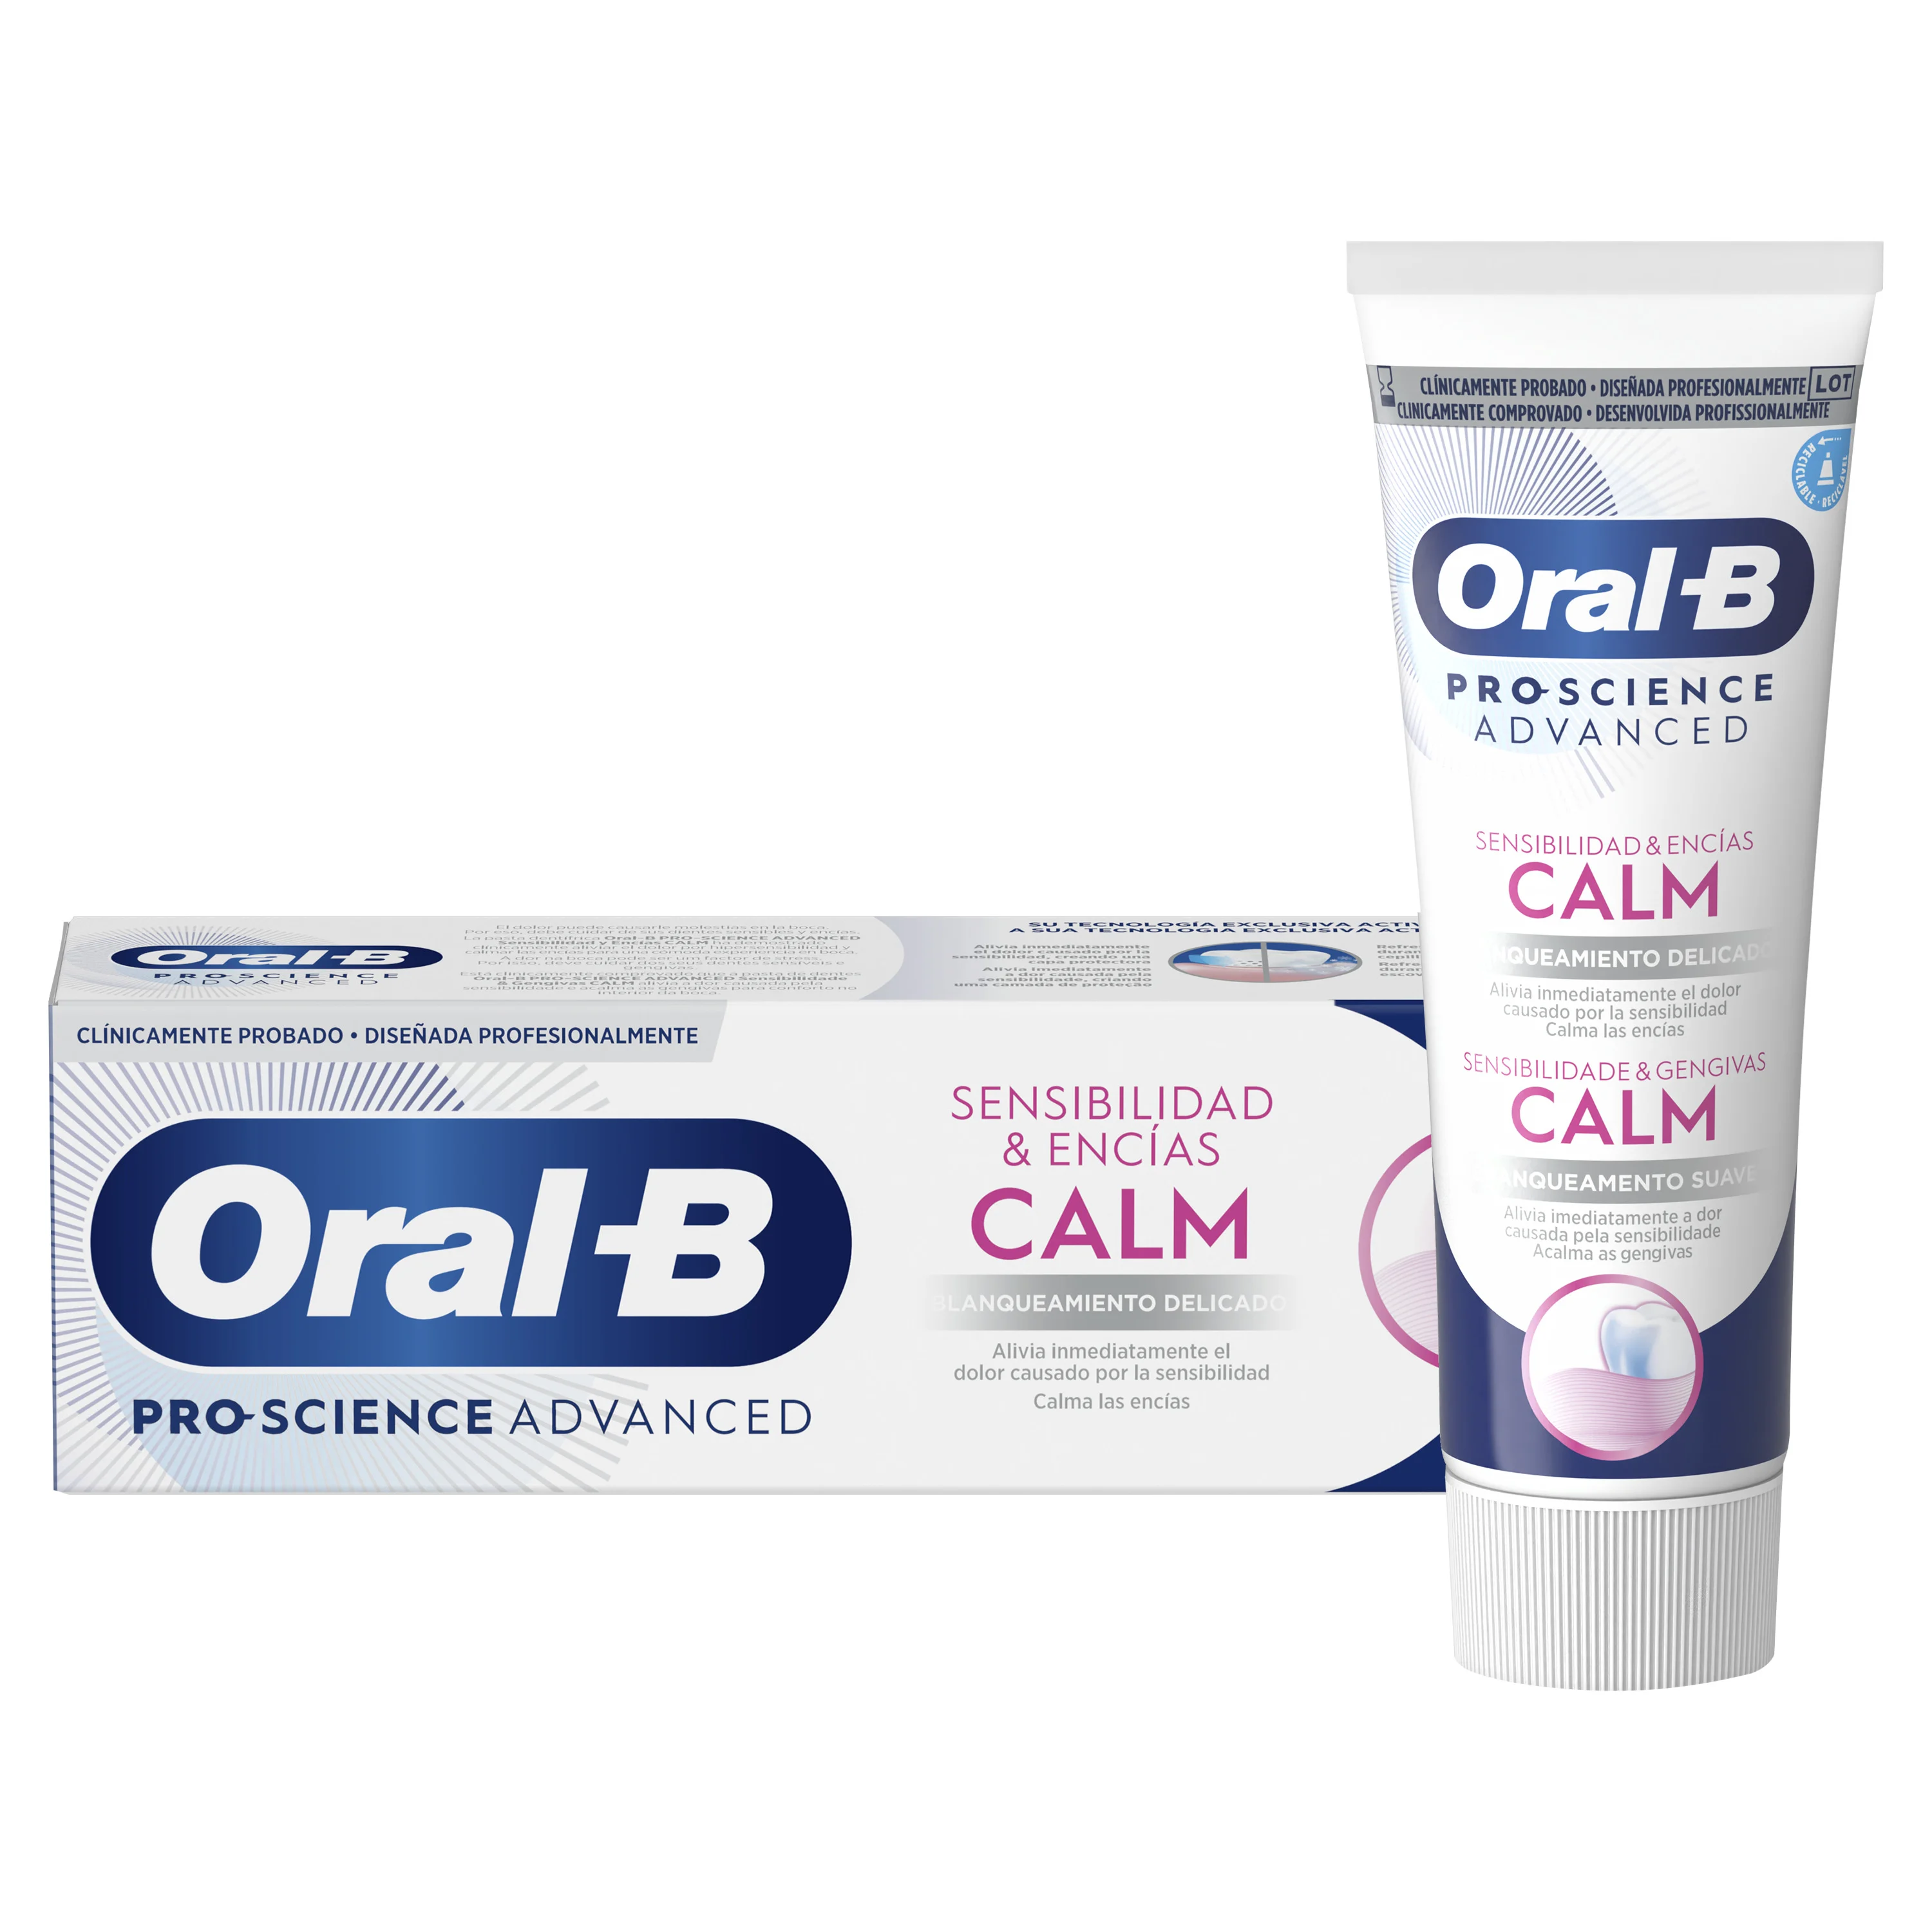 Oral-B Sensibilidad & Encías Calm Blanqueamiento Suave Pasta Dentífrica - 0 